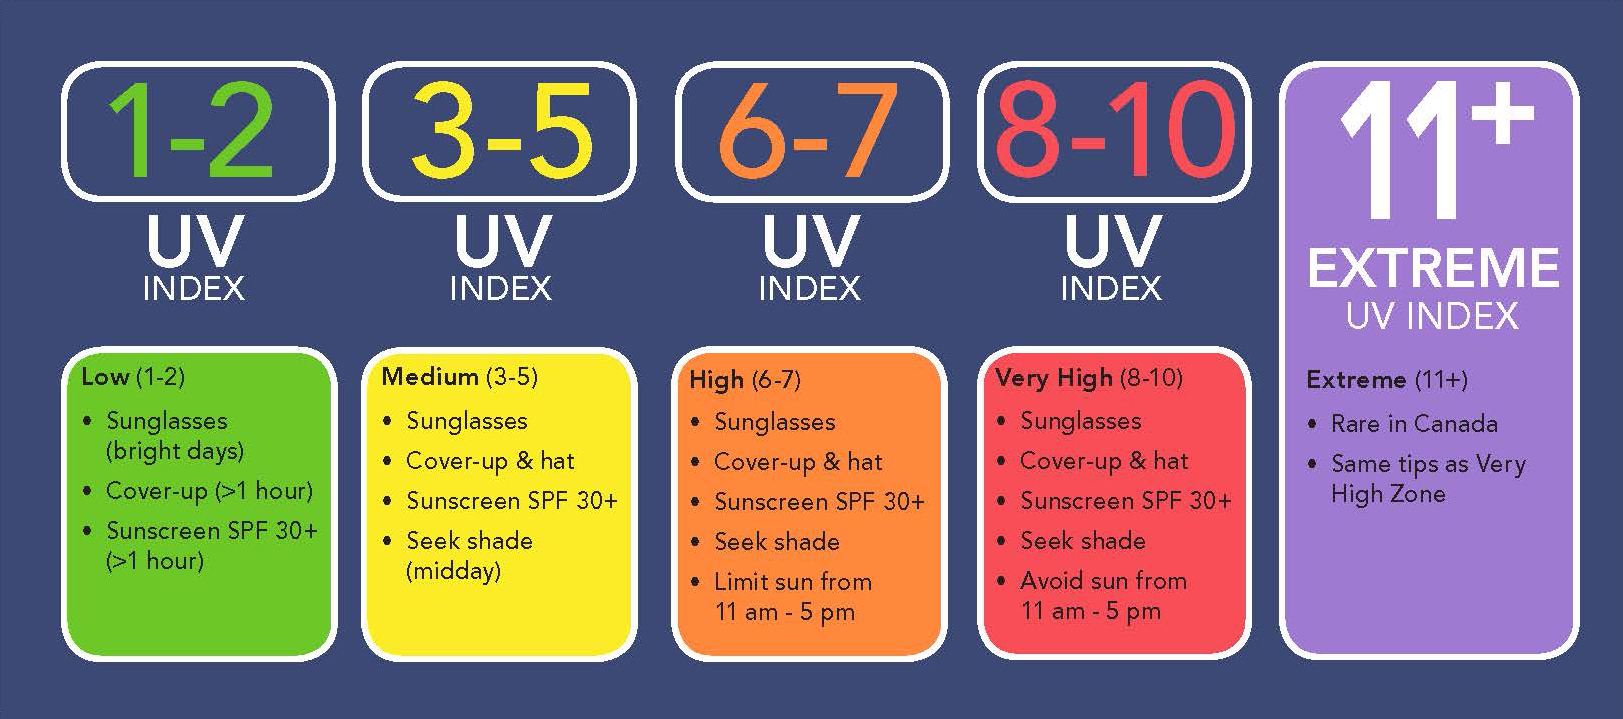 Extreme UV Index